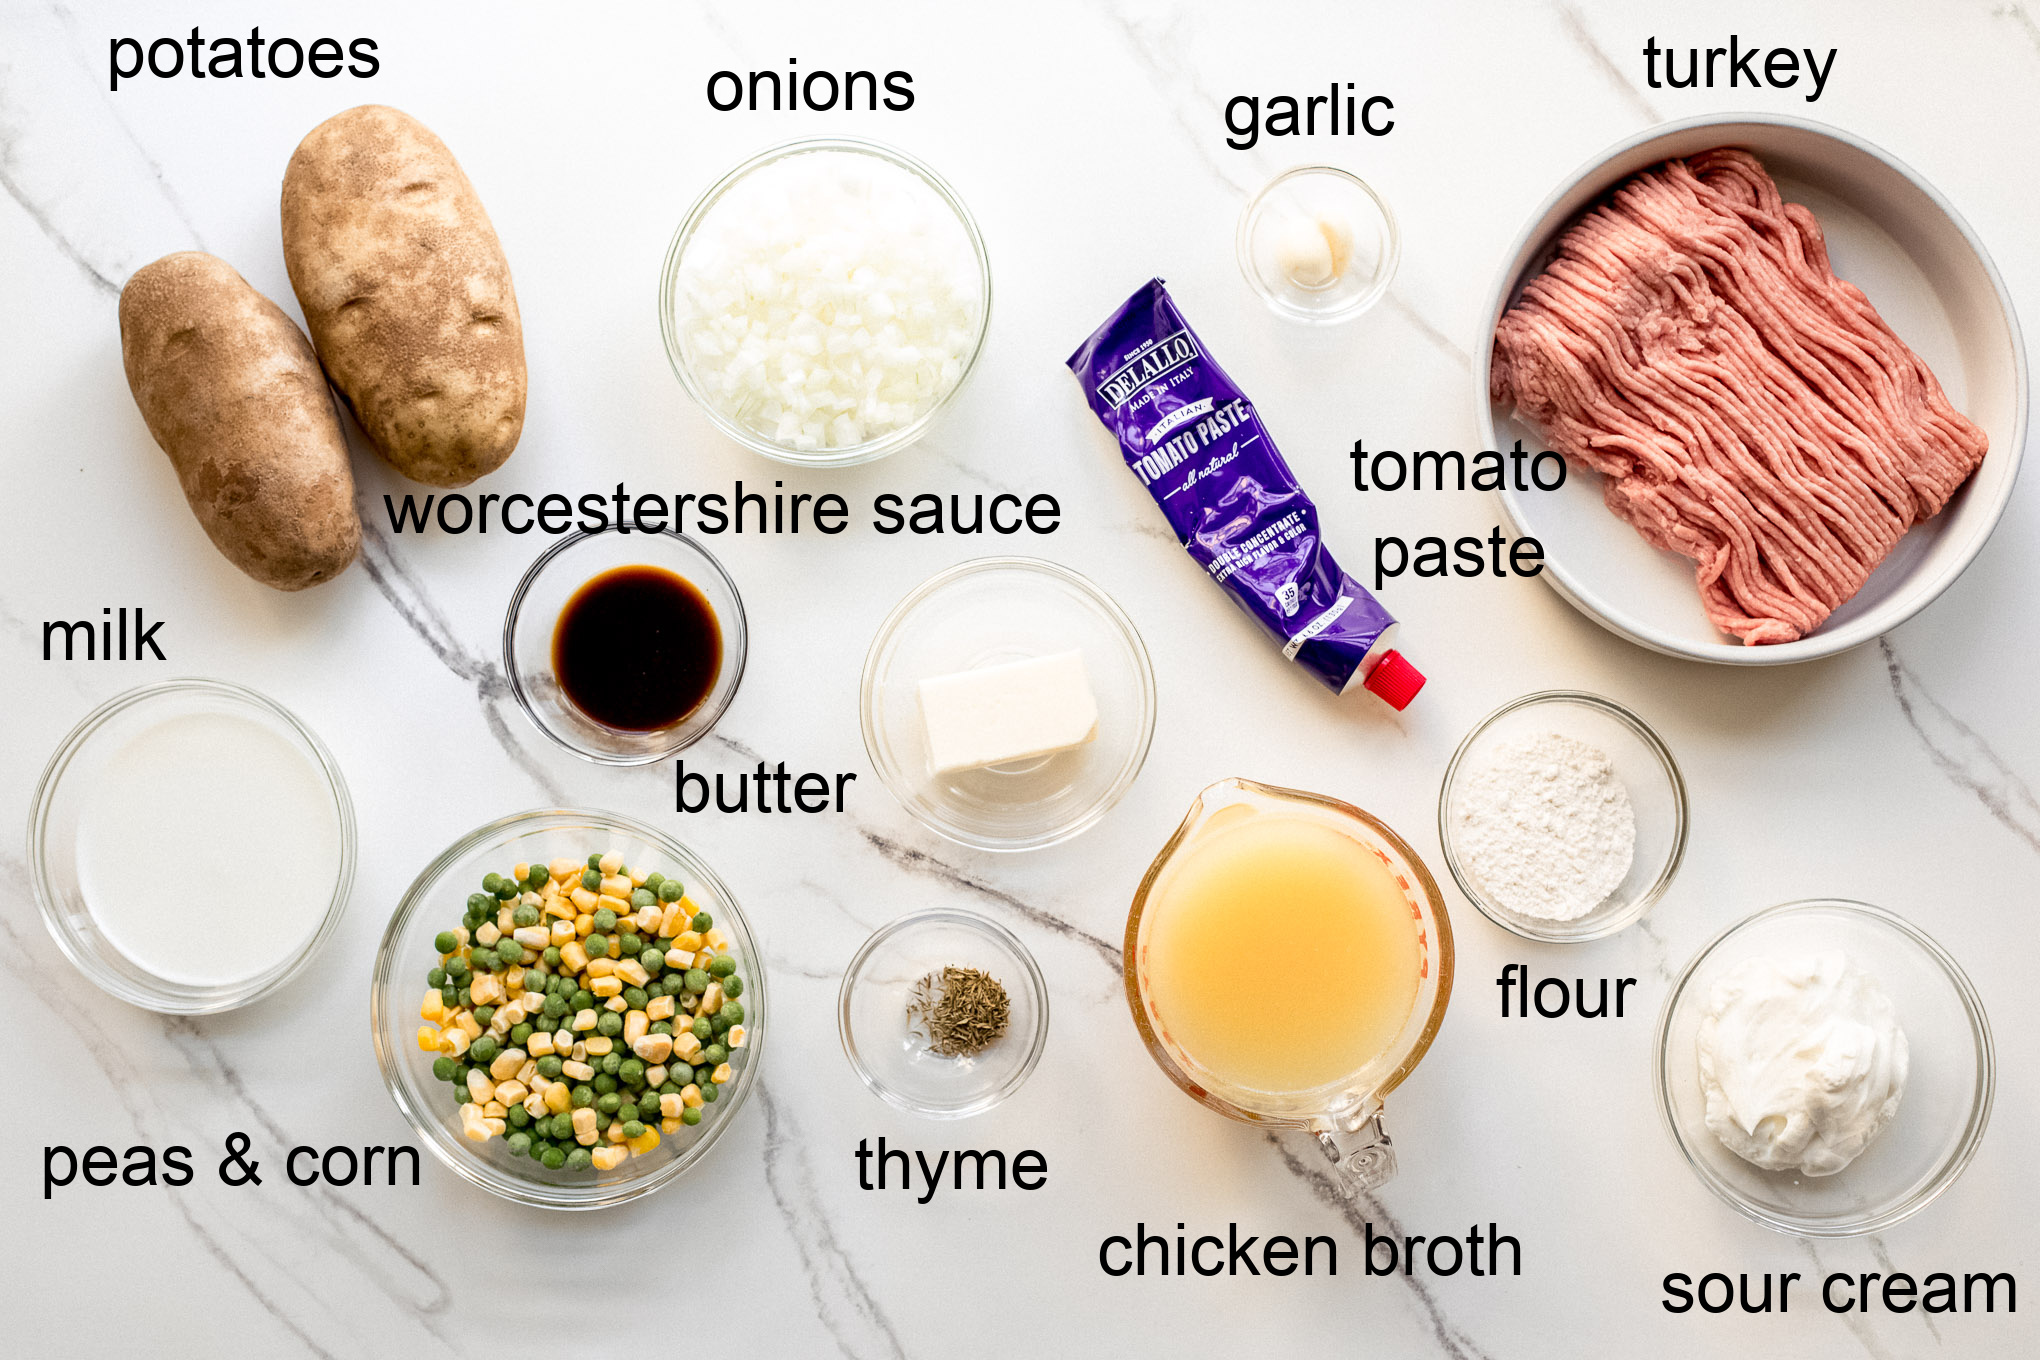 ingredients for shepherd's pie